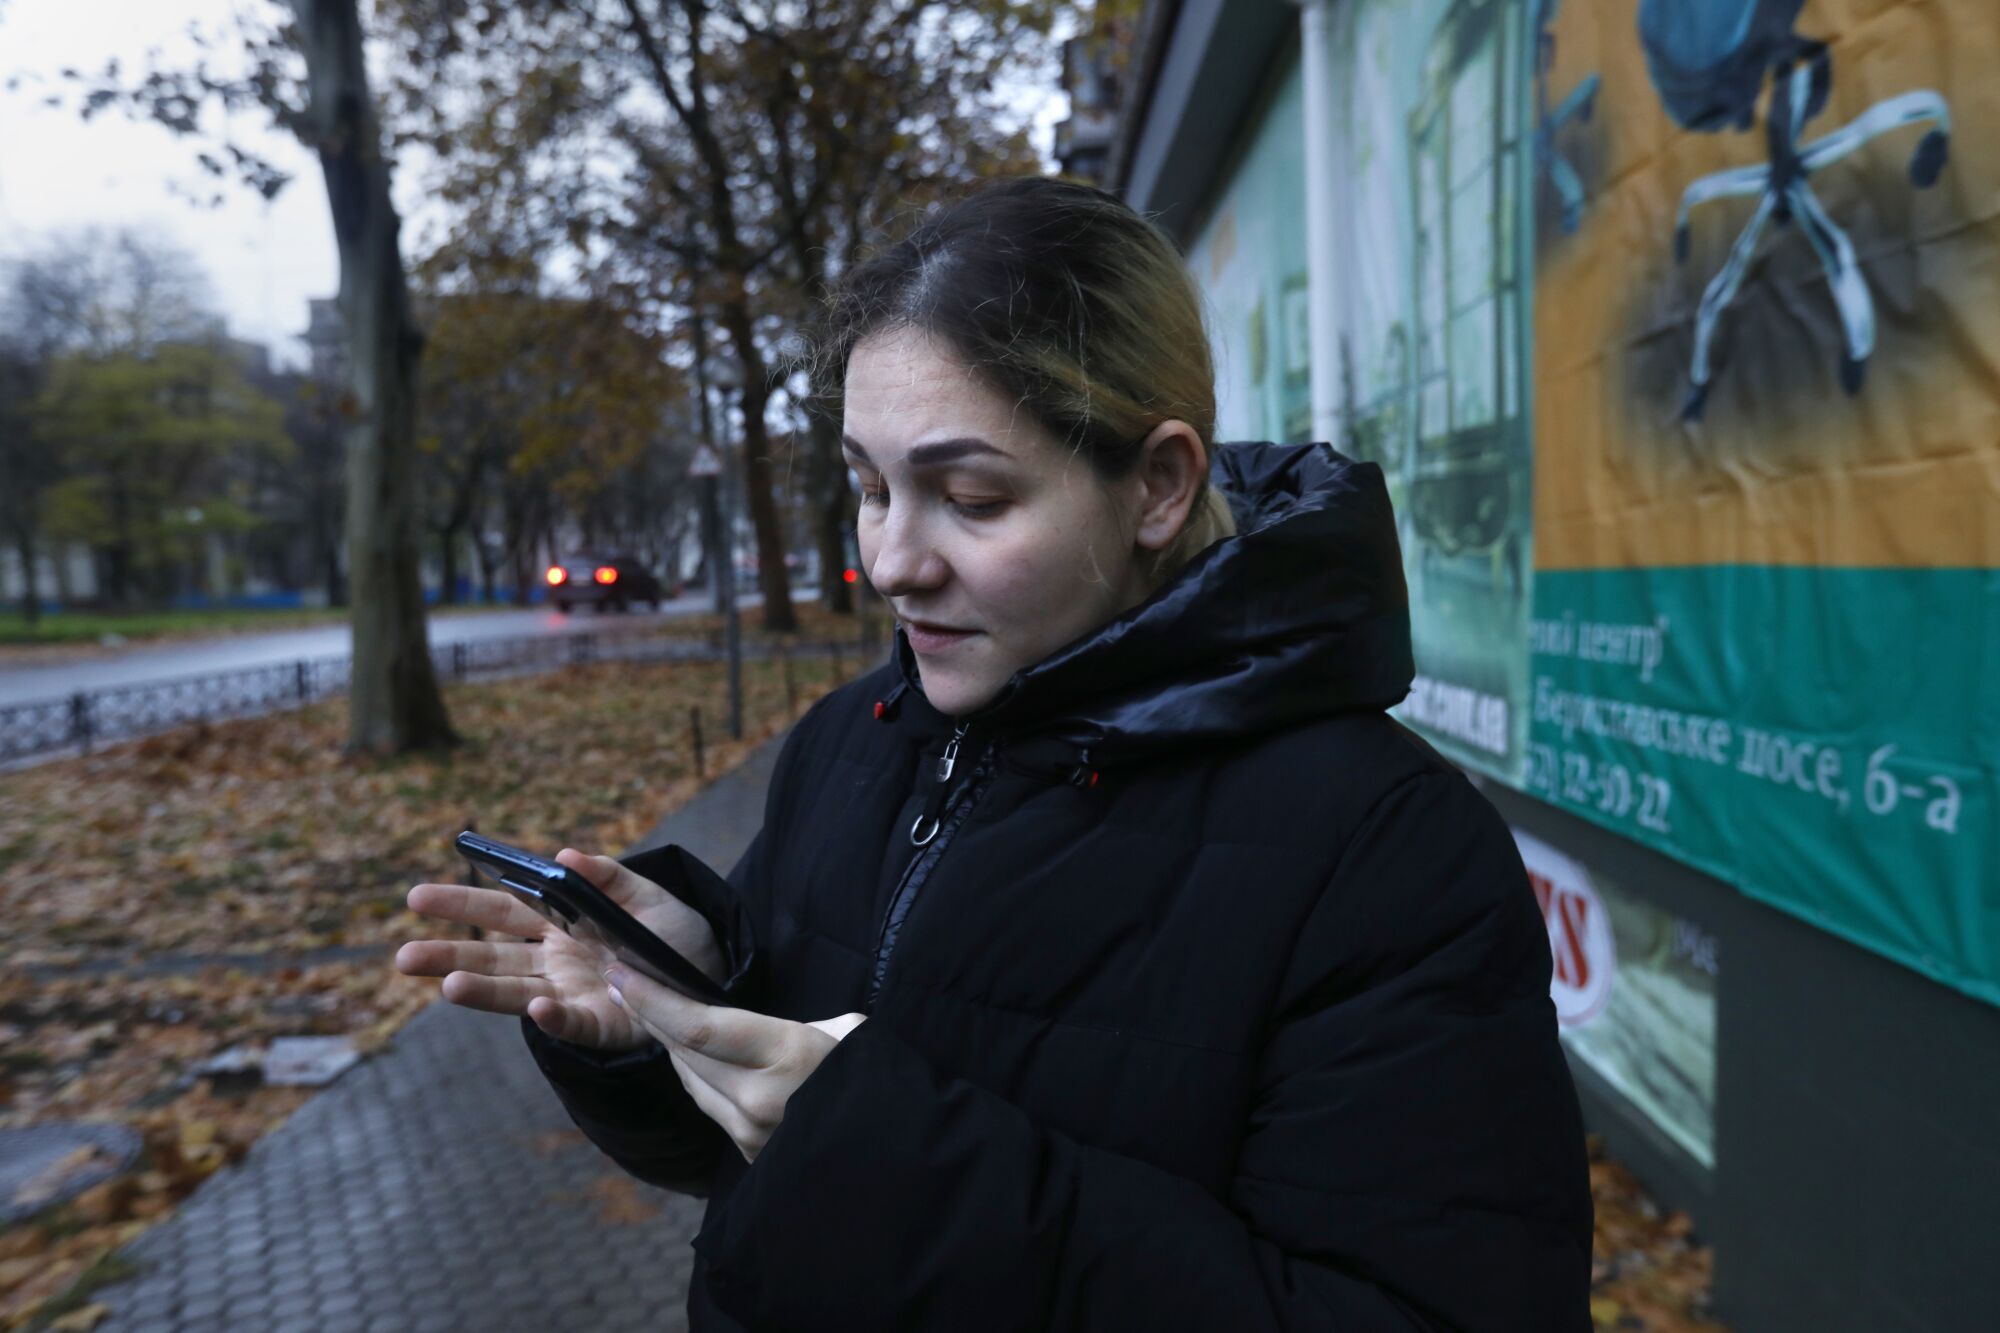 Siyah saçlı, kapüşonlu siyah bir ceket giyen bir kadın, ağaçların sıralandığı bir sokakta cep telefonuna bakıyor. 